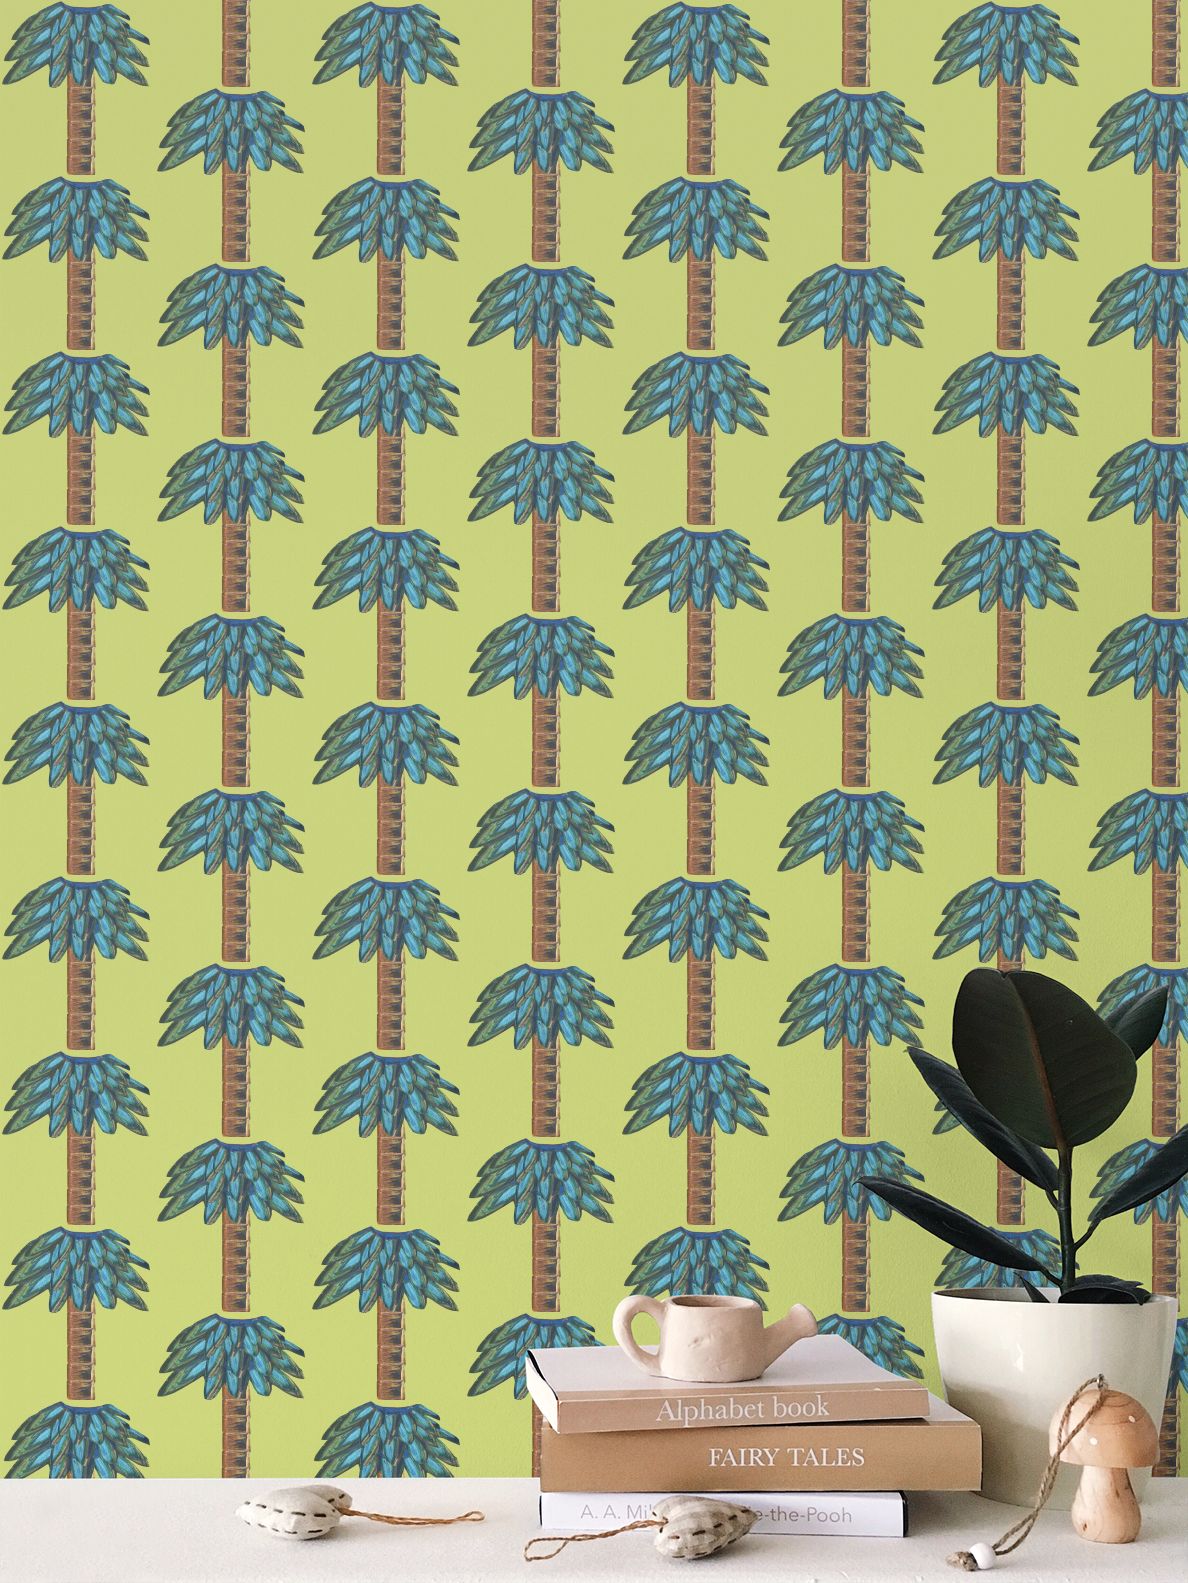 Tiki Palm Lime Wallpaper